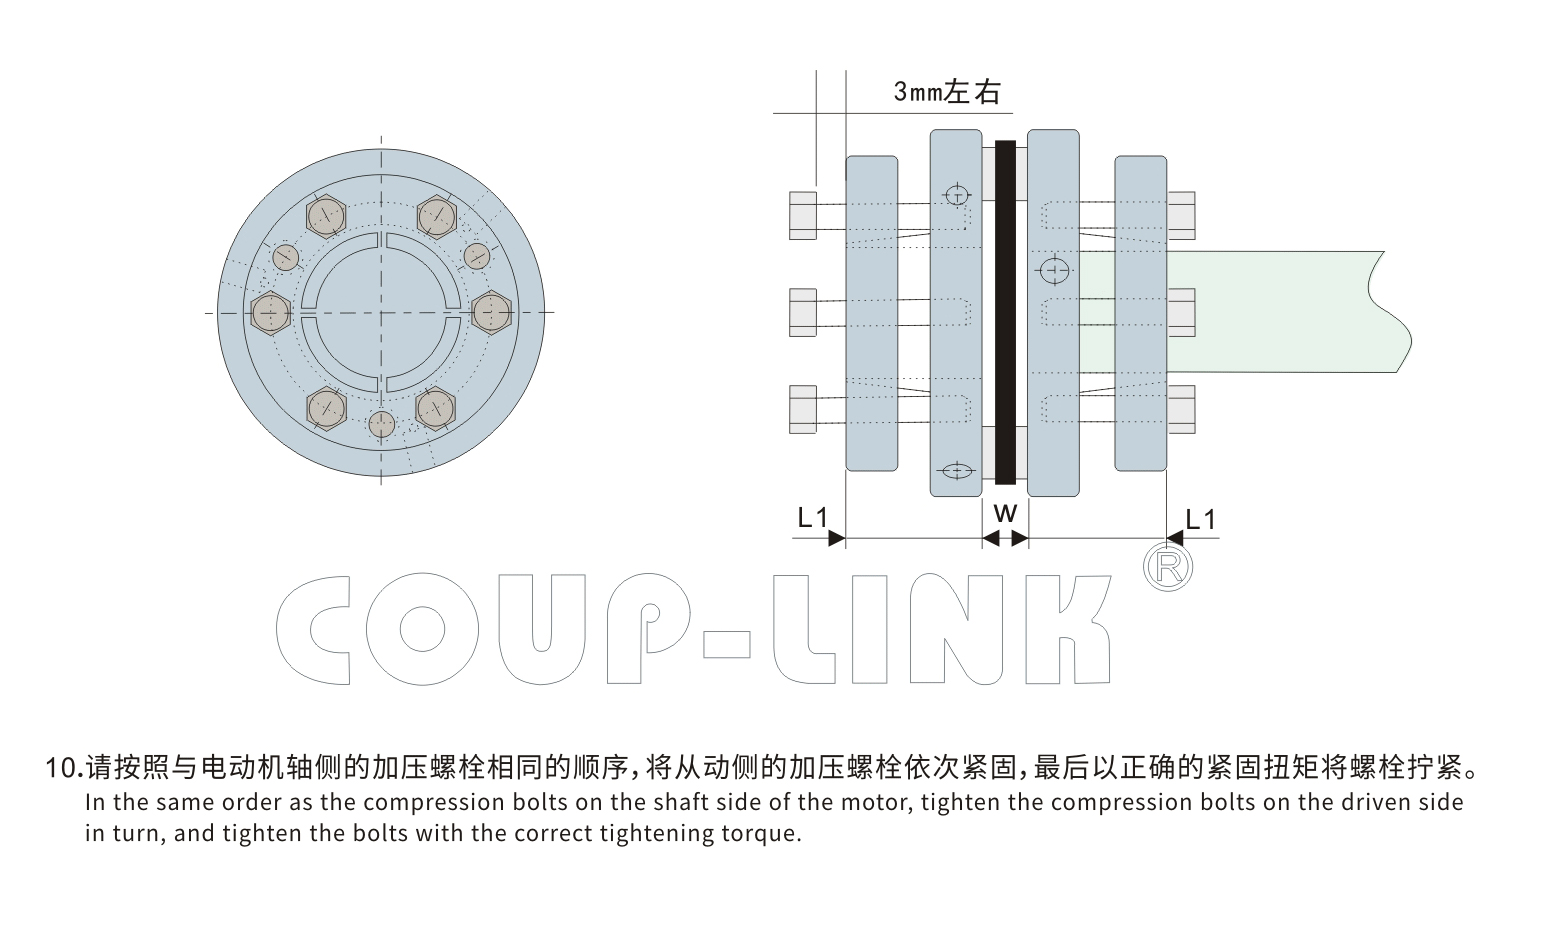 单节胀套膜片联轴器 LK15系列-联轴器厂家